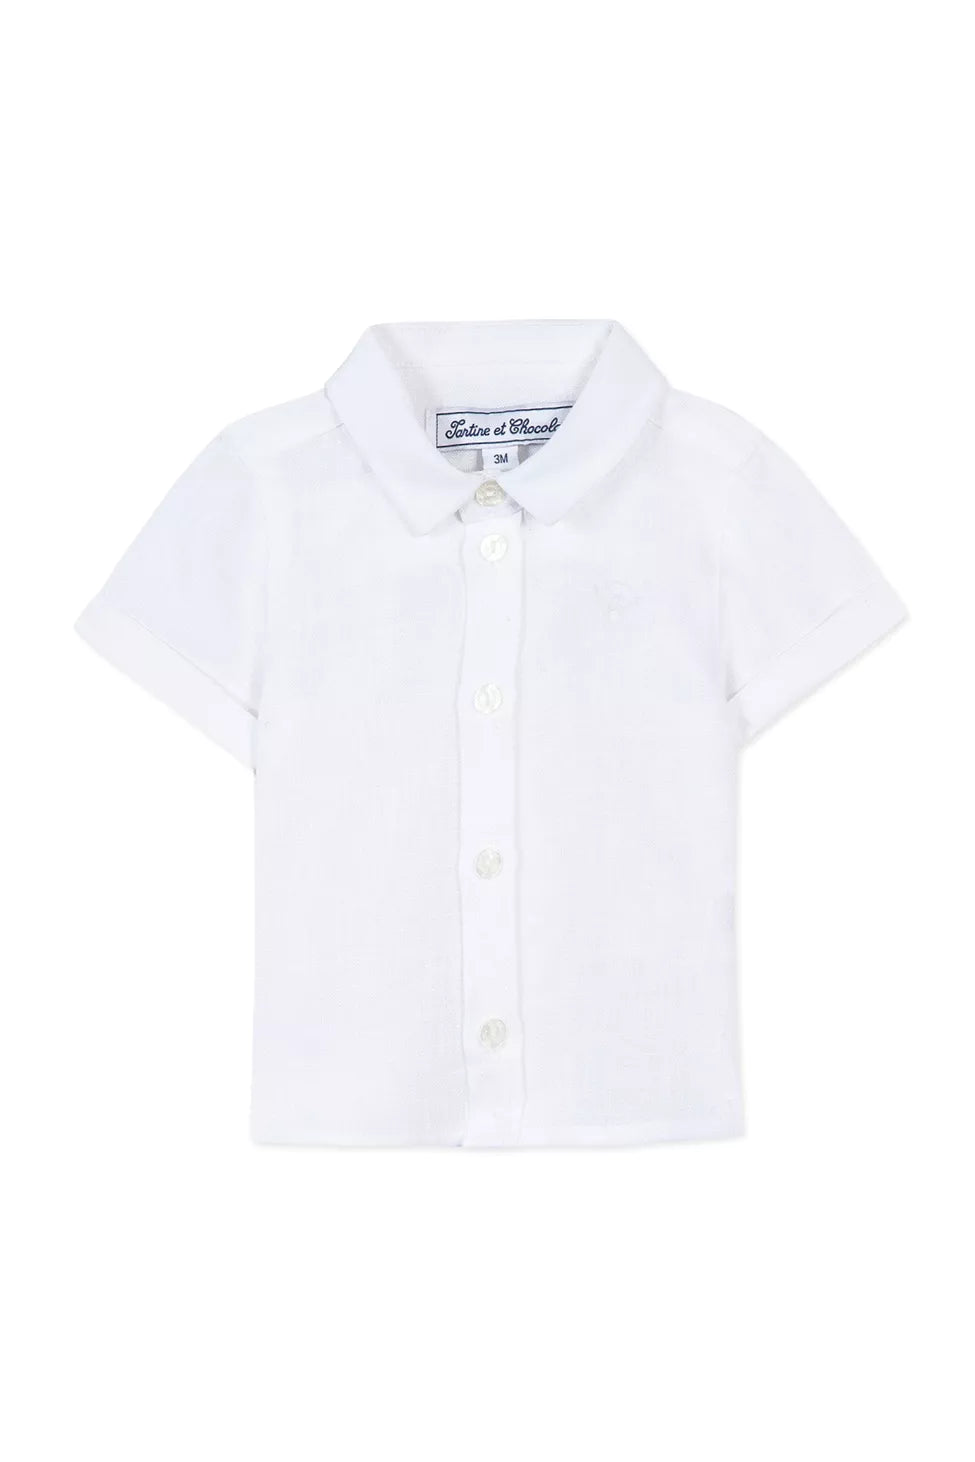 Tartine Baby Short Sleeve Button Down - Blanc